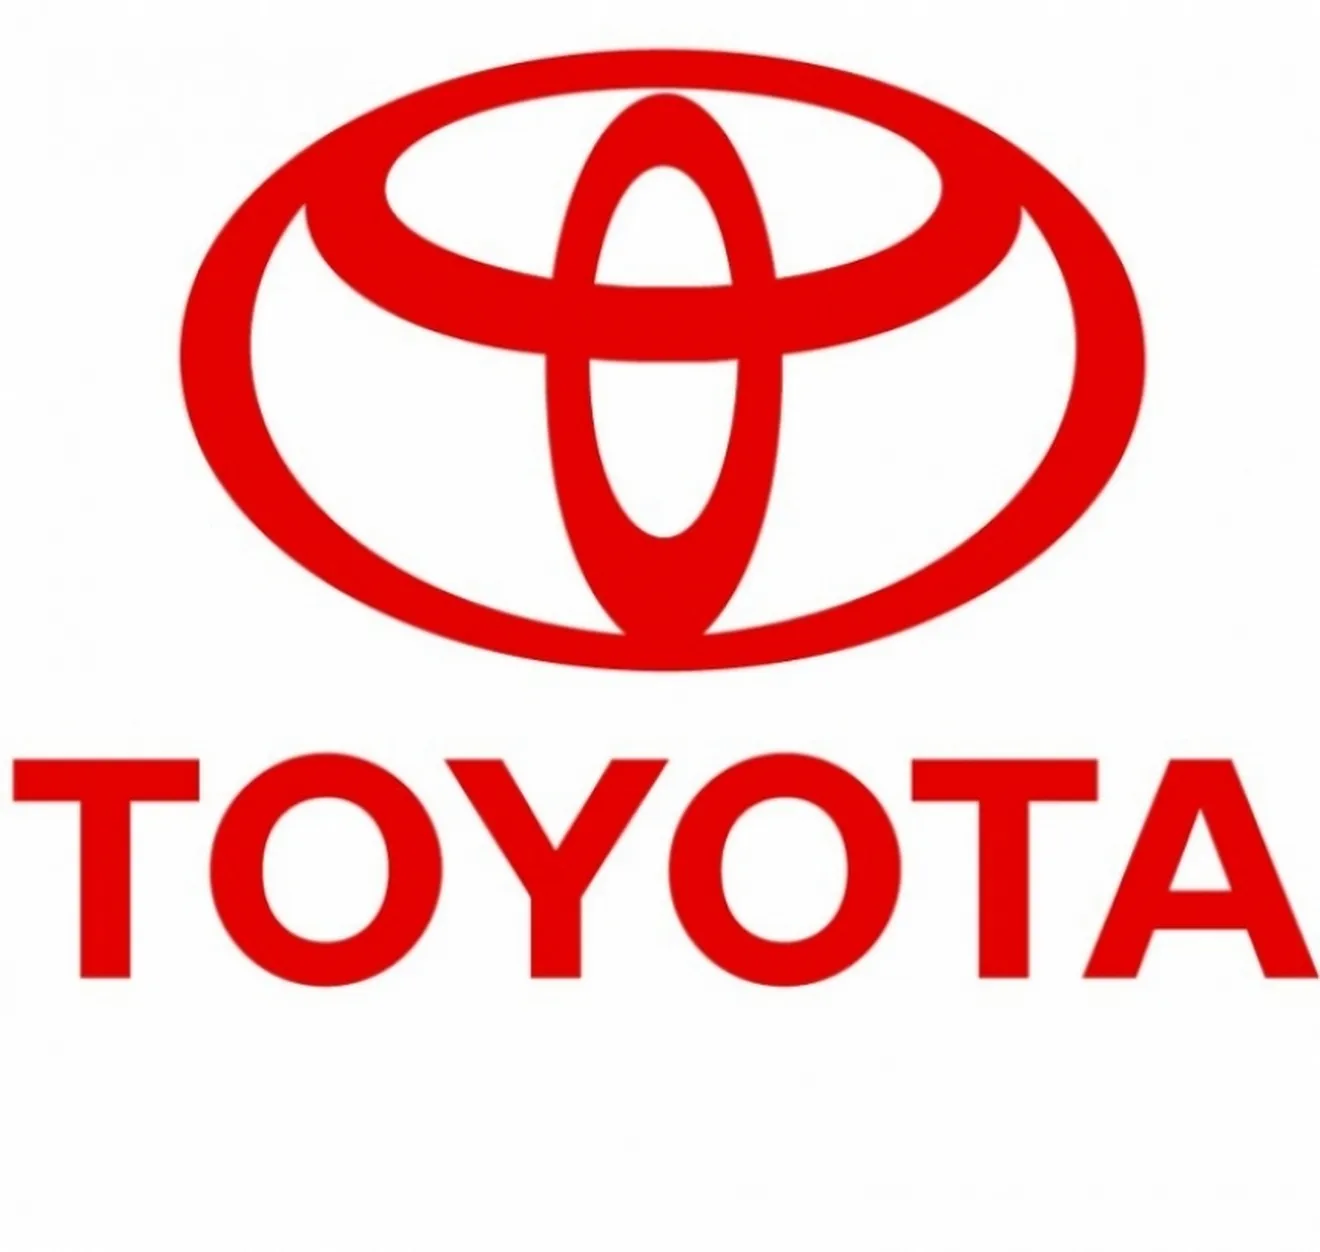 Toyota producirá 1 millón menos de coches